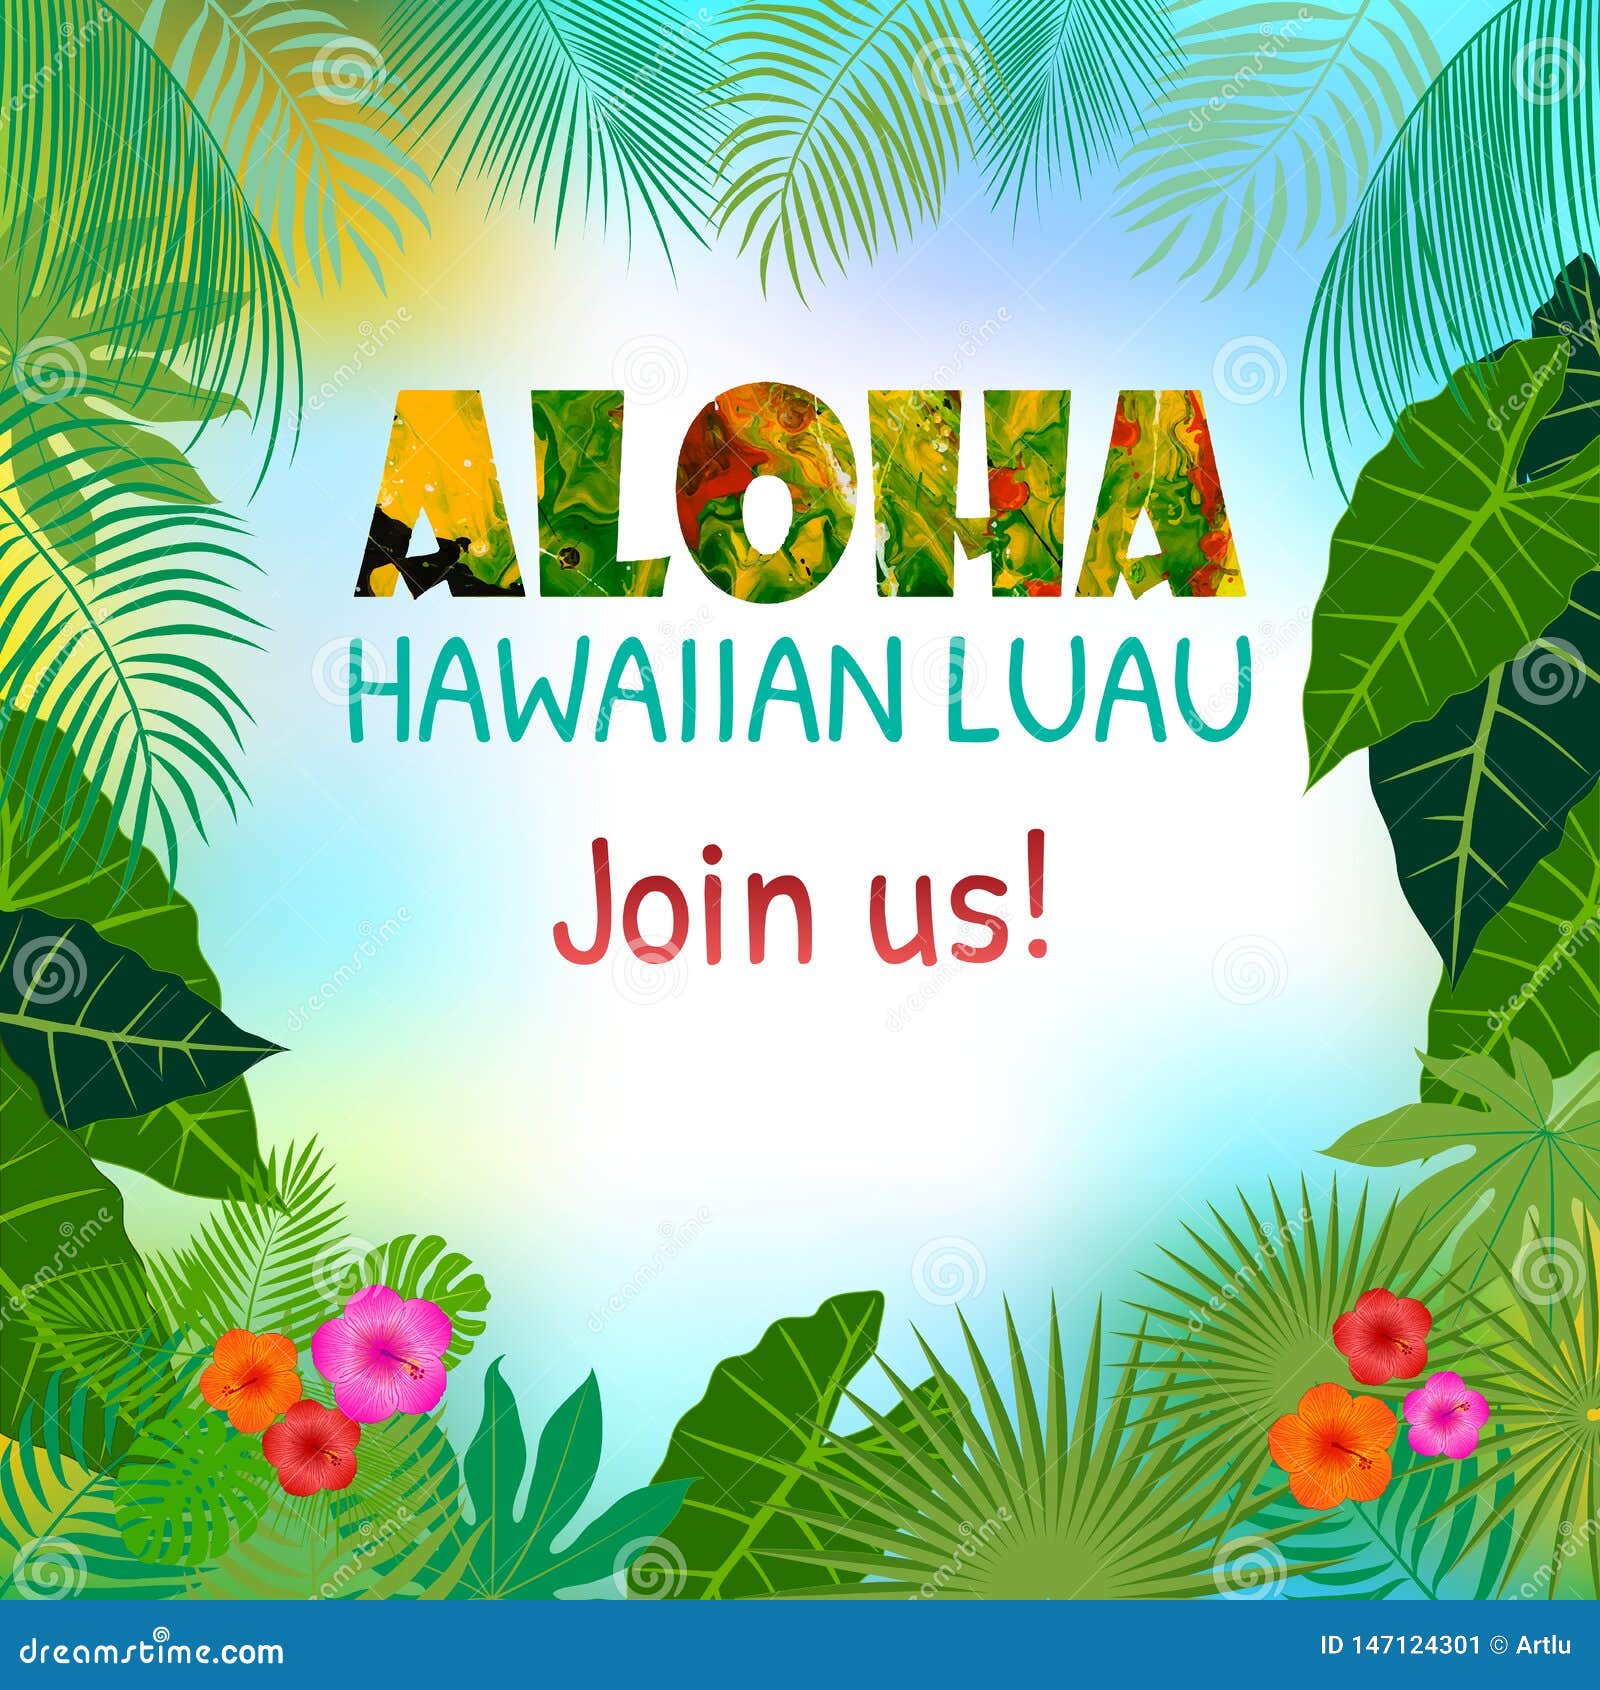 Thiết kế vector Aloha Hawaii mang đến cho bạn một không gian tươi mới và sáng tạo. Sự kết hợp giữa hình ảnh Hawaii và phong cách vector đem lại những tác phẩm đầy màu sắc và nghệ thuật. Hãy xem và tận hưởng những thiết kế độc đáo và lạ mắt này ngay hôm nay!